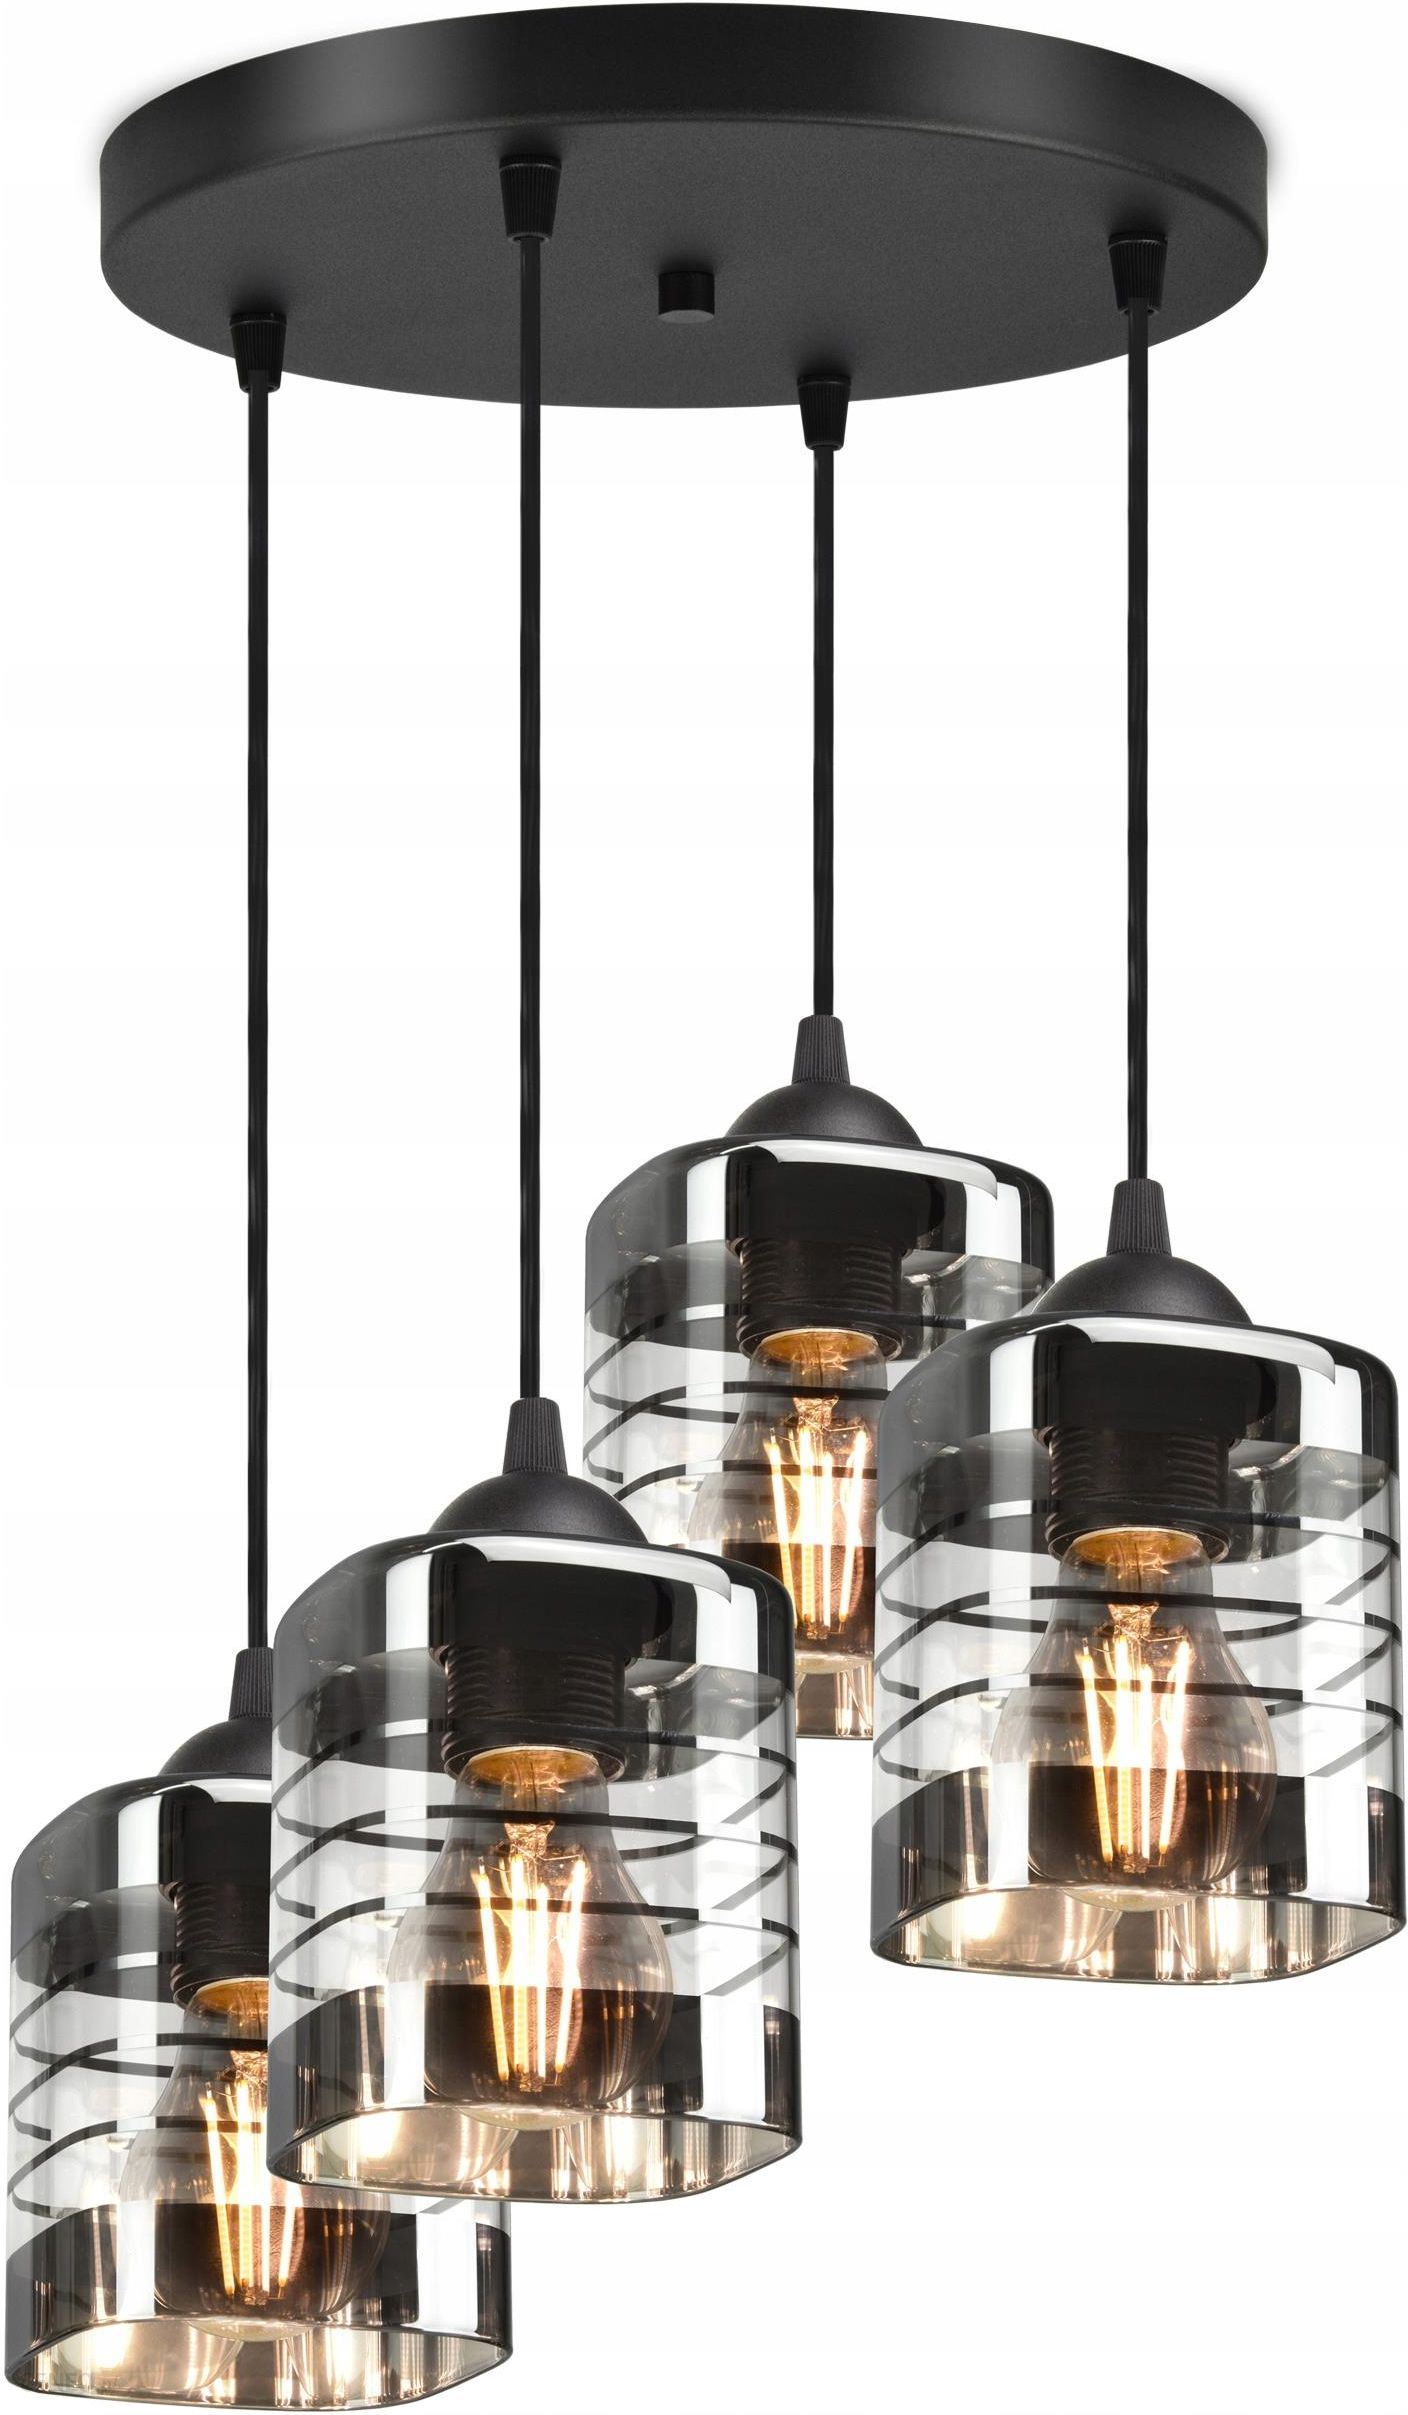 Luxolar Light Factory Szklana Lampa Wisząca Sufitowa Żyrandol Plafon Led (LAMPAWISZĄCA923EZ4)